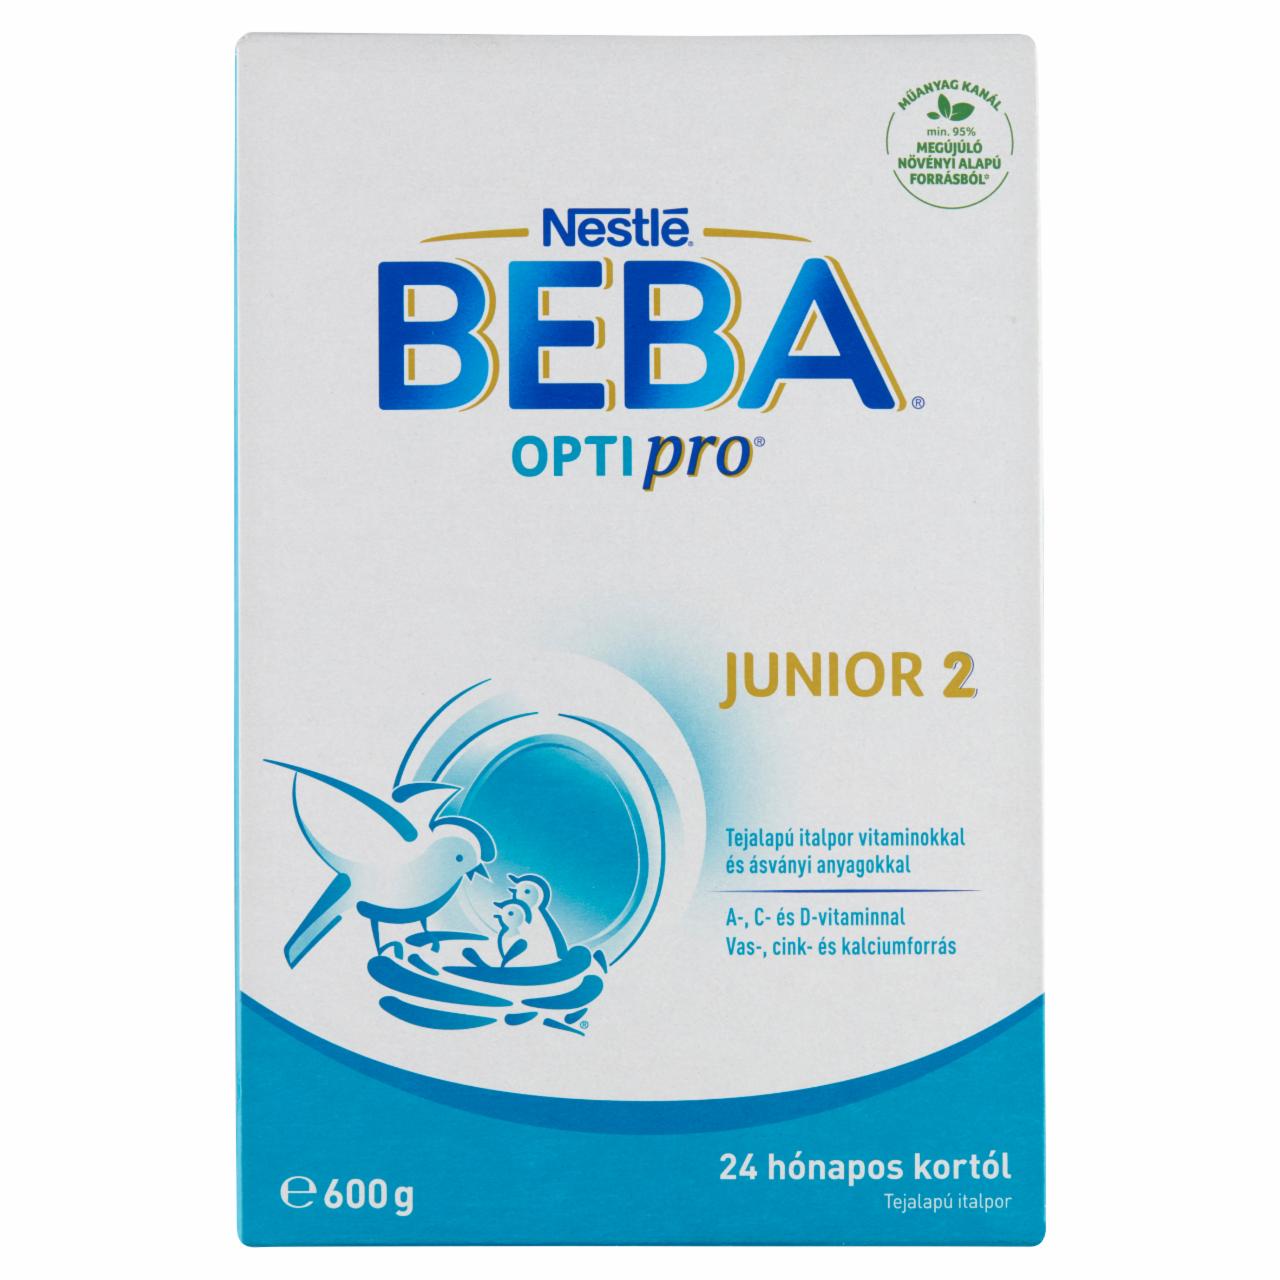 Képek - Beba Optipro Junior 2 tejalapú italpor 24 hónapos kortól 2 x 300 g (600 g)